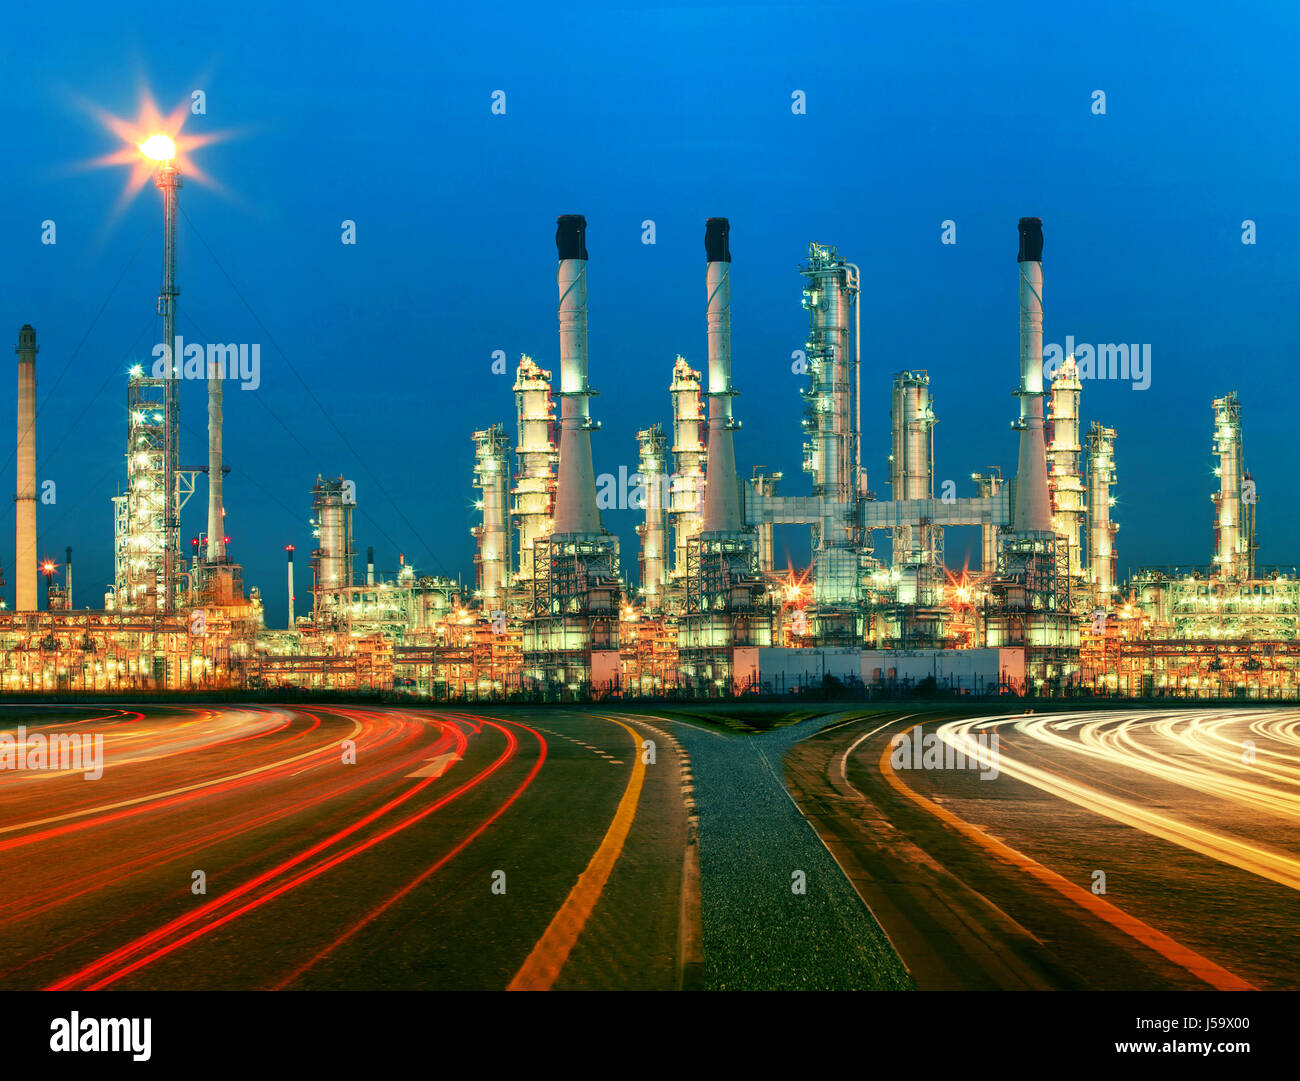 schöne Beleuchtung des Öl-Raffinerie-Anlage im Bun petrochemicaly Industrie Immobilien Einsatz für Kraft, Energie und Erdöl-Industrie-Thema Stockfoto